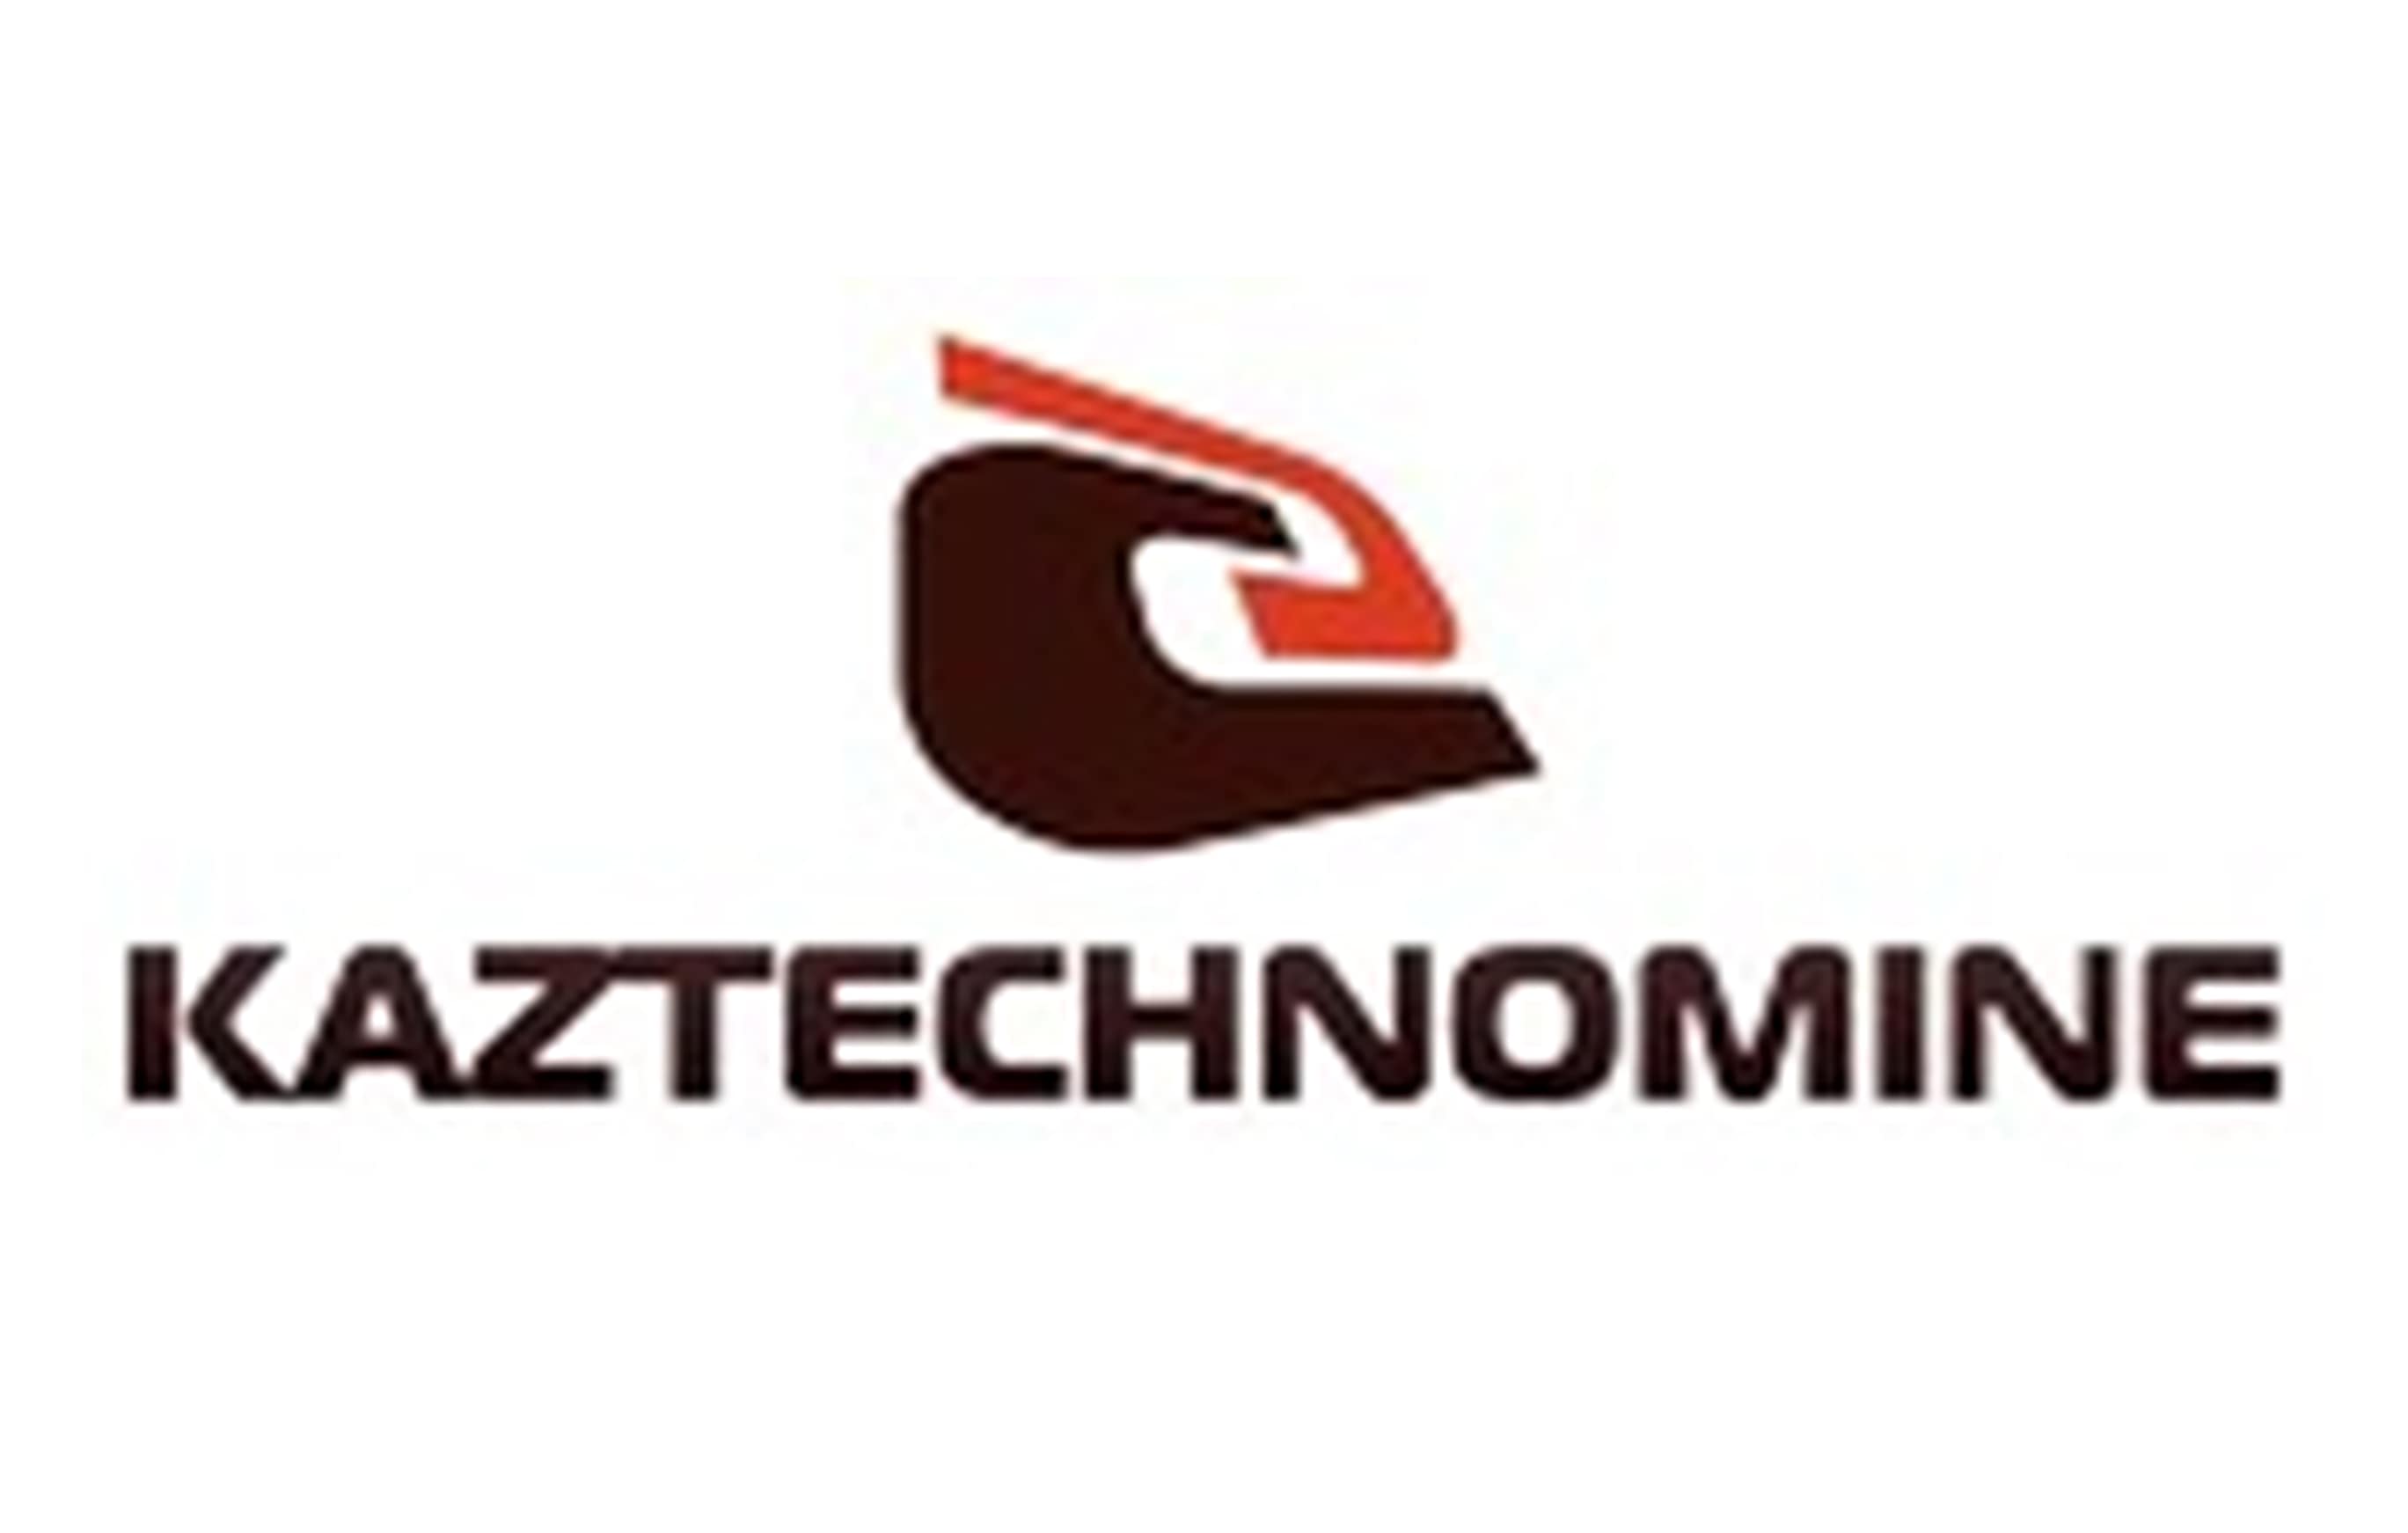 KazTechnoMine